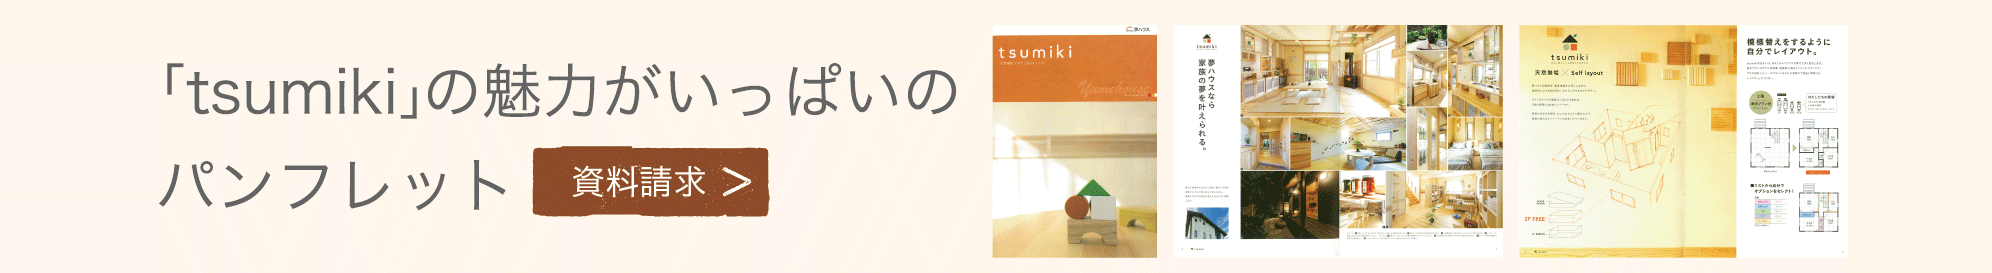 無垢材の家「モッカの家・tsumiki（つみき）」の魅力がいっぱいのパンフレットをプレゼント